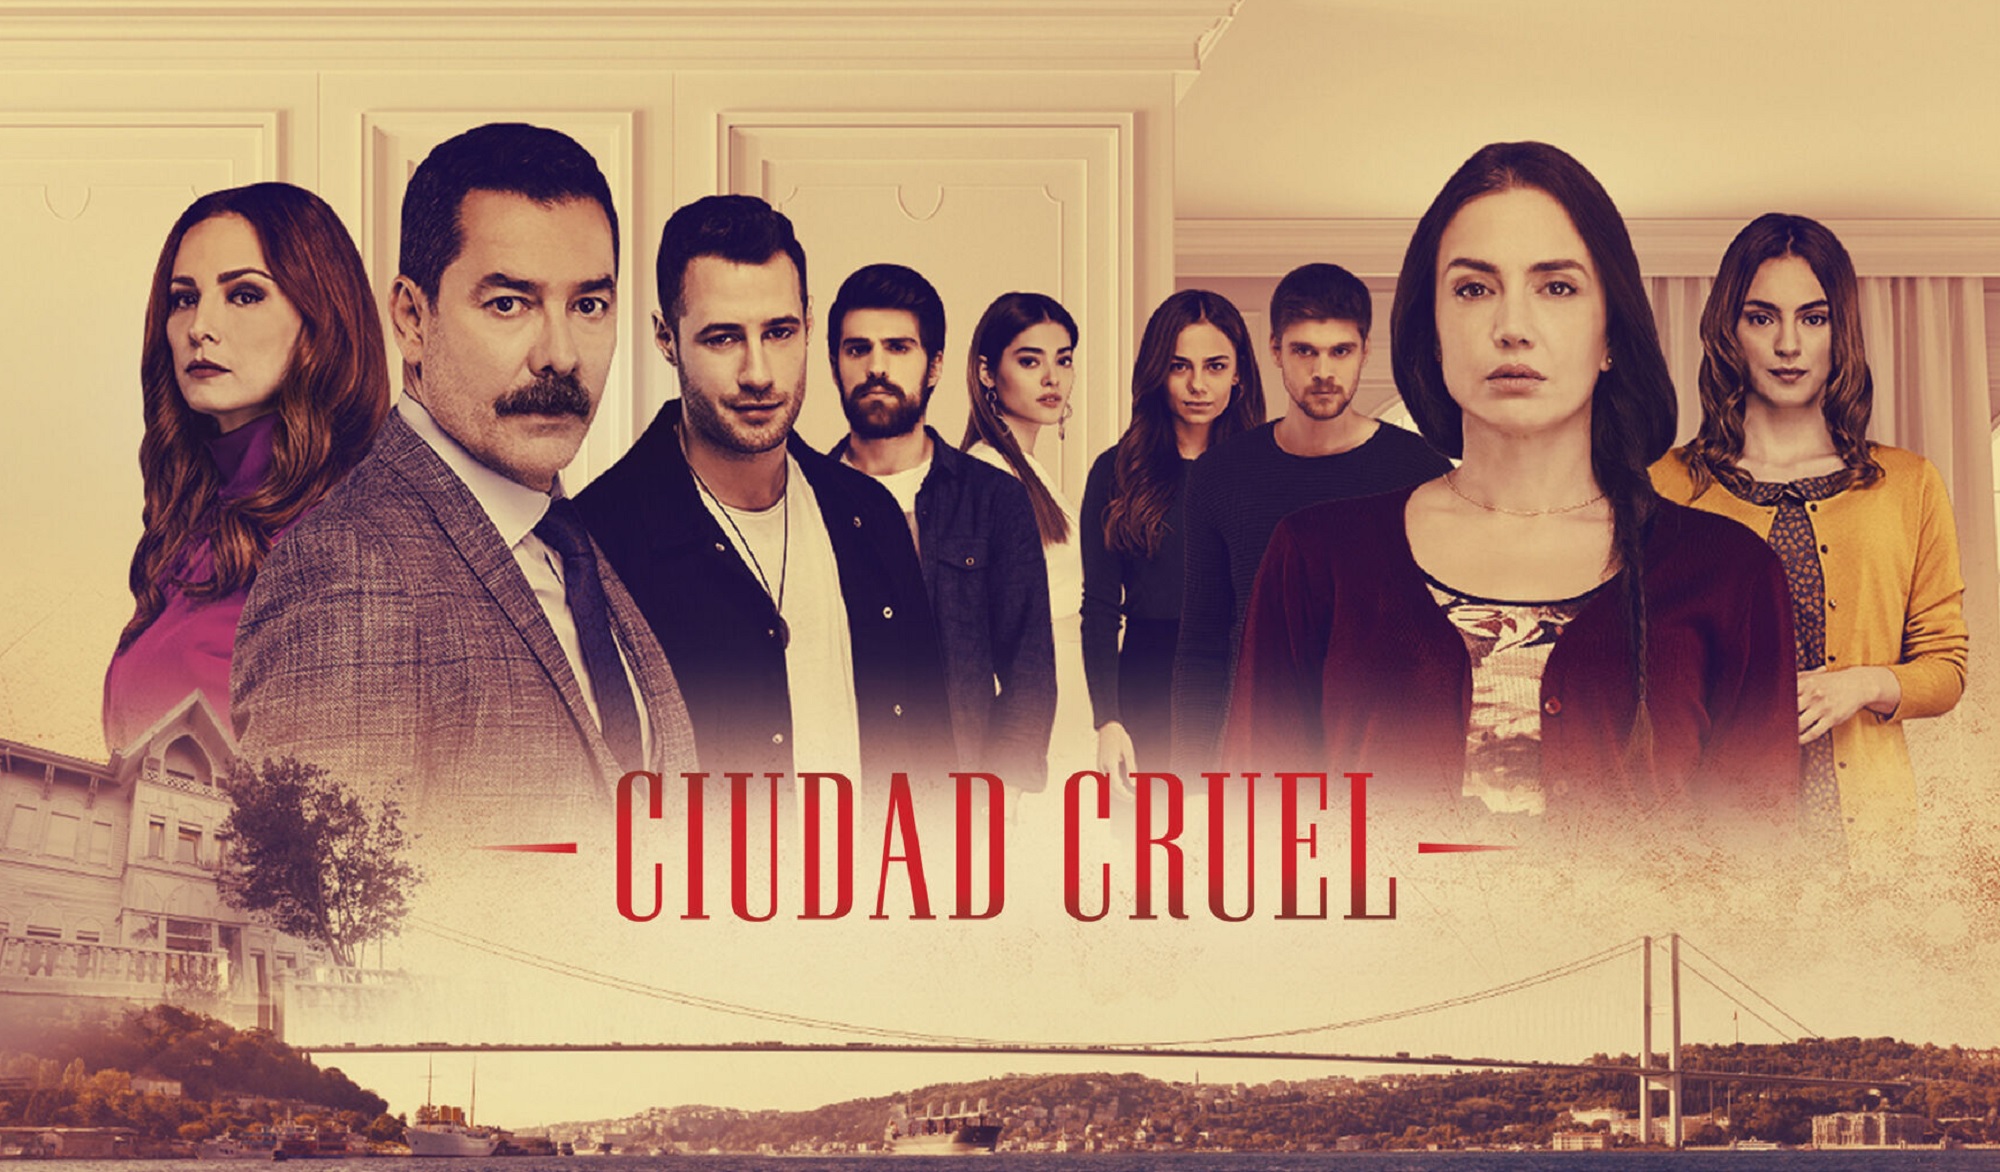 Así es 'Ciudad Cruel', la nueva serie turca que Nova estrena este miércoles 9